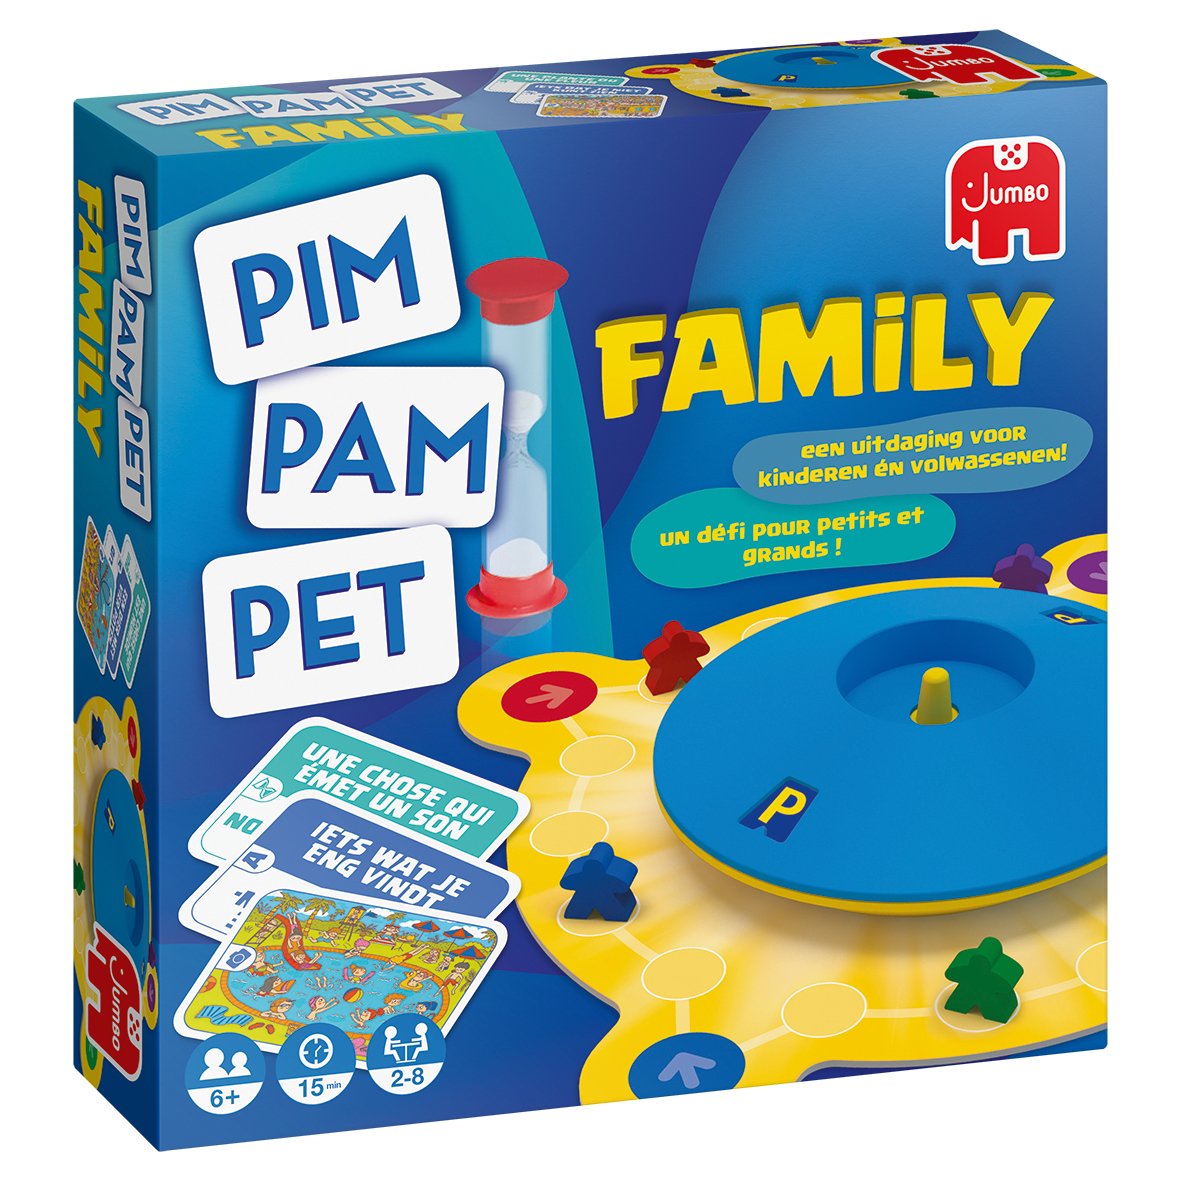 Baars Publiciteit Monopoly Jumbo Pim Pam Pet Family - 6+ kopen?